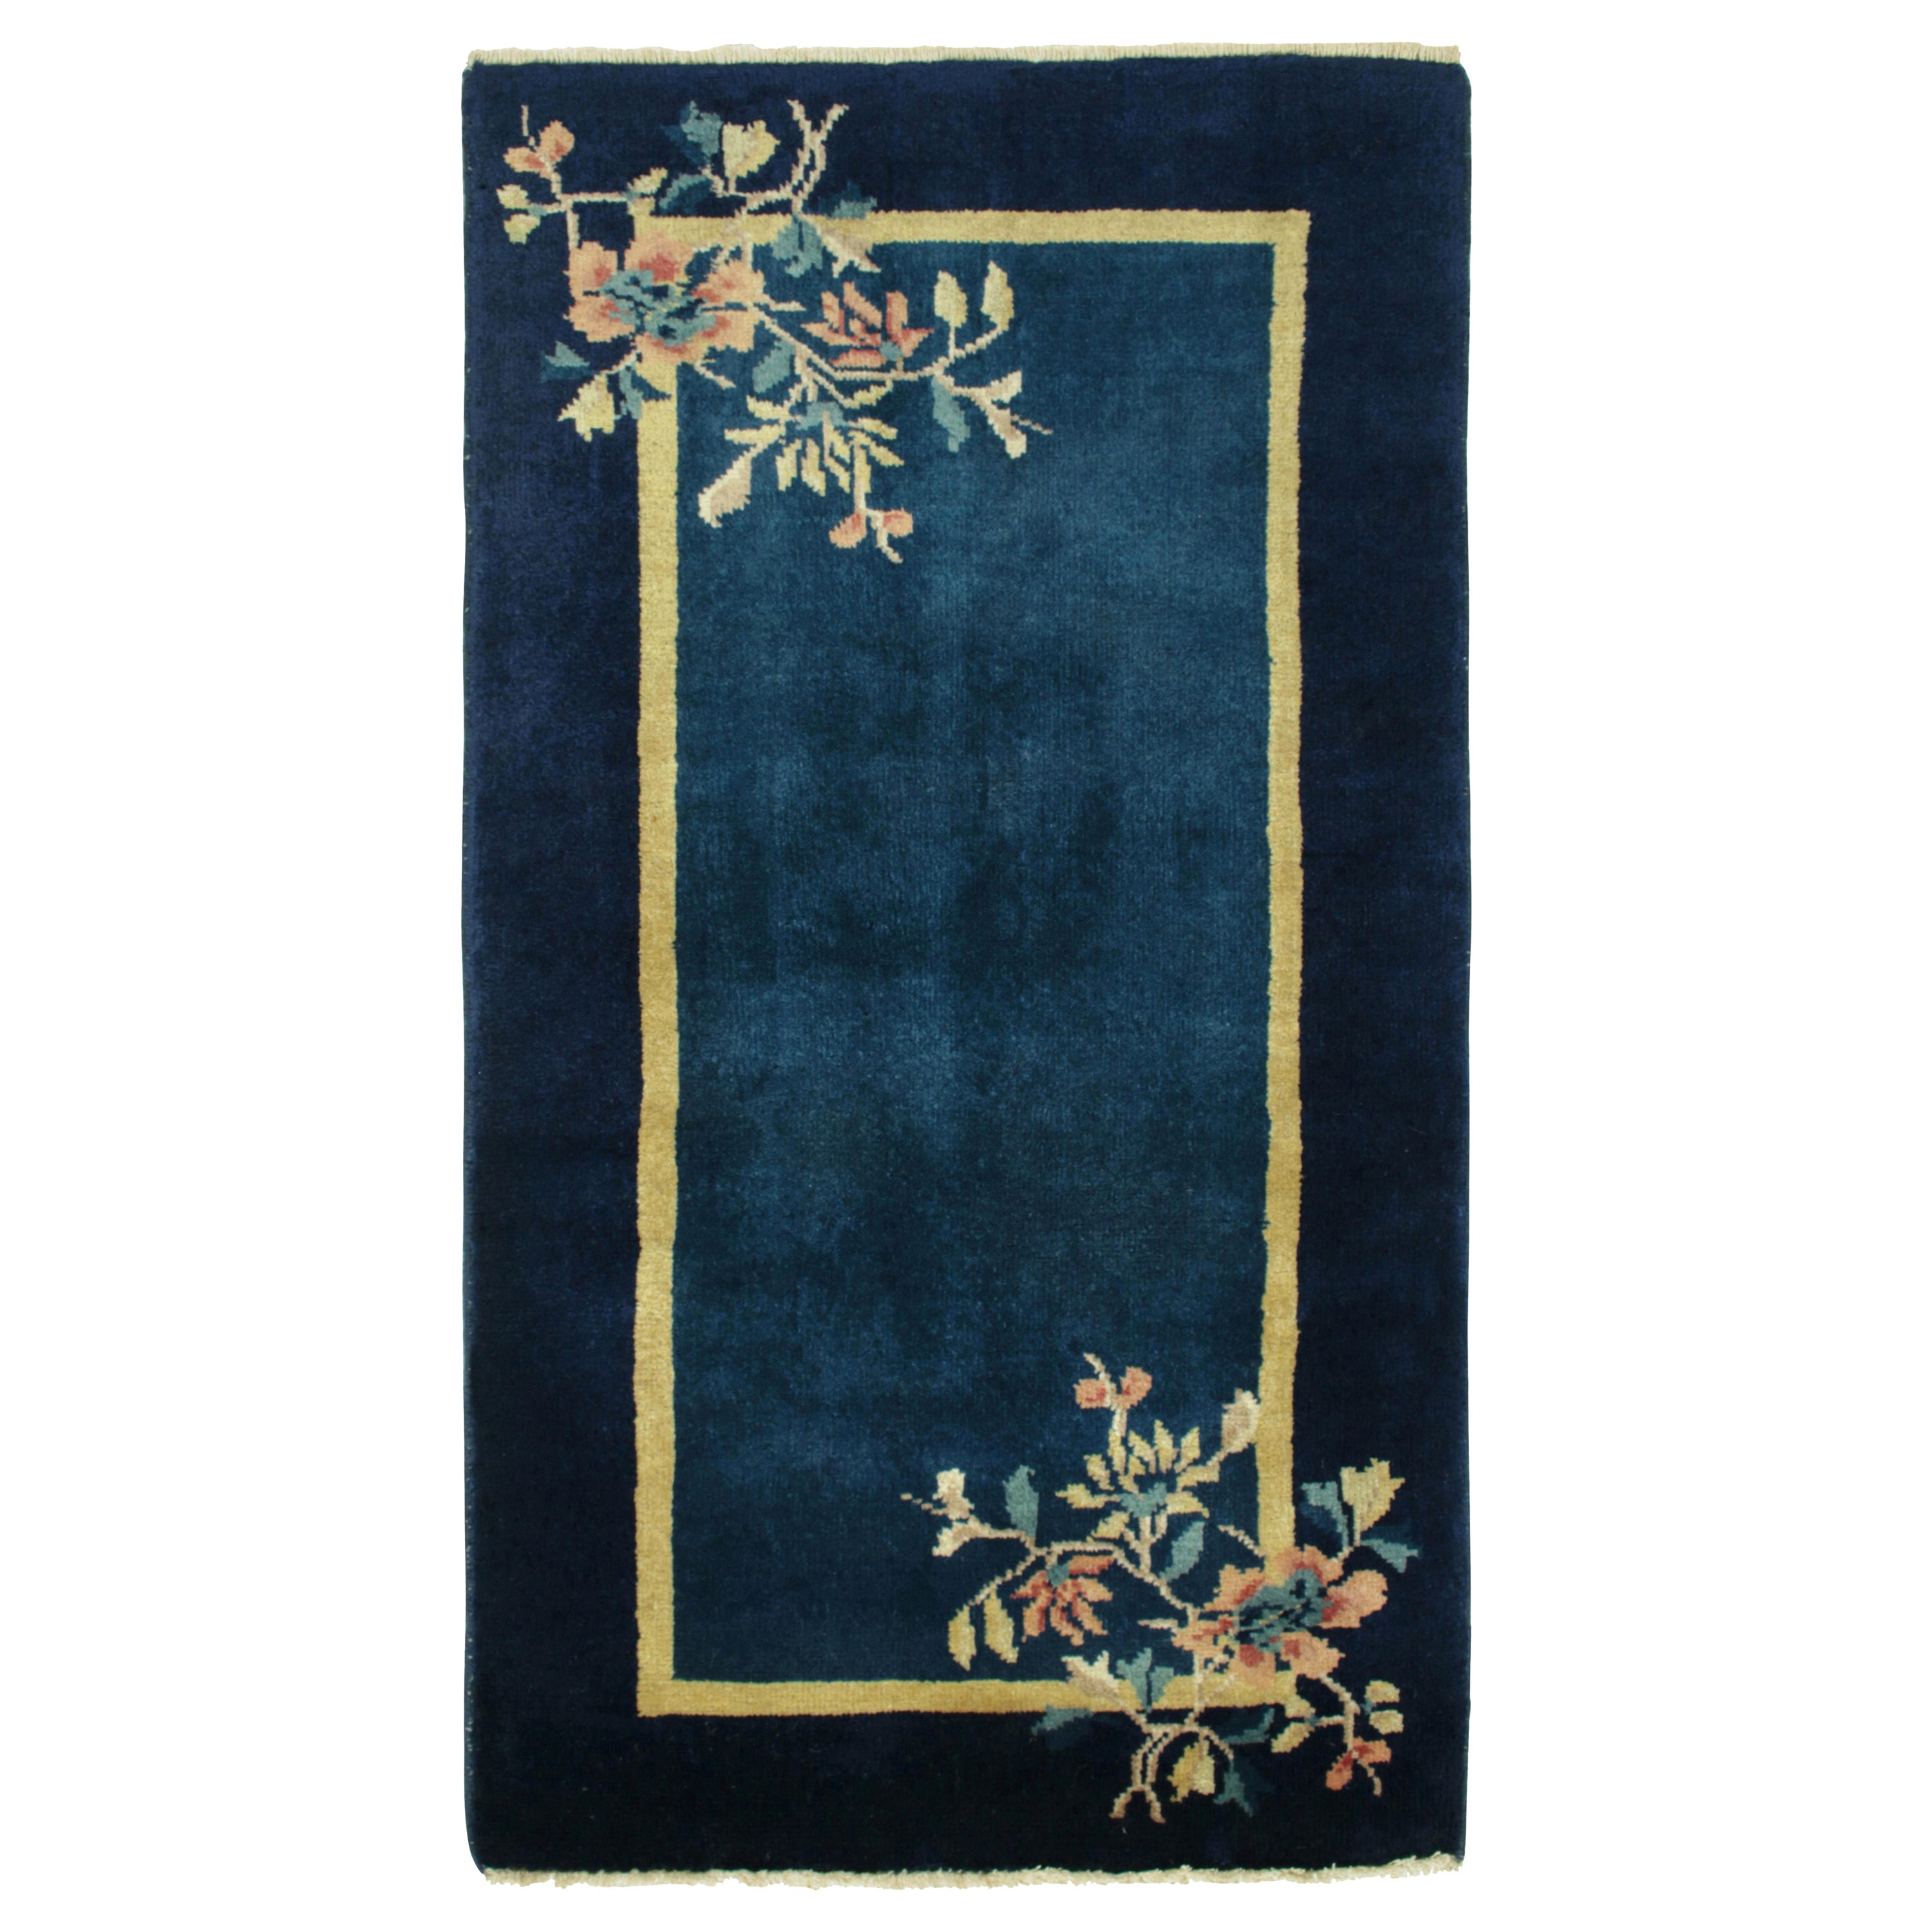 Chinesischer Deko-Teppich im Vintage-Stil in Blau, Gold, Grün mit Blumenmuster von Teppich & Kelim